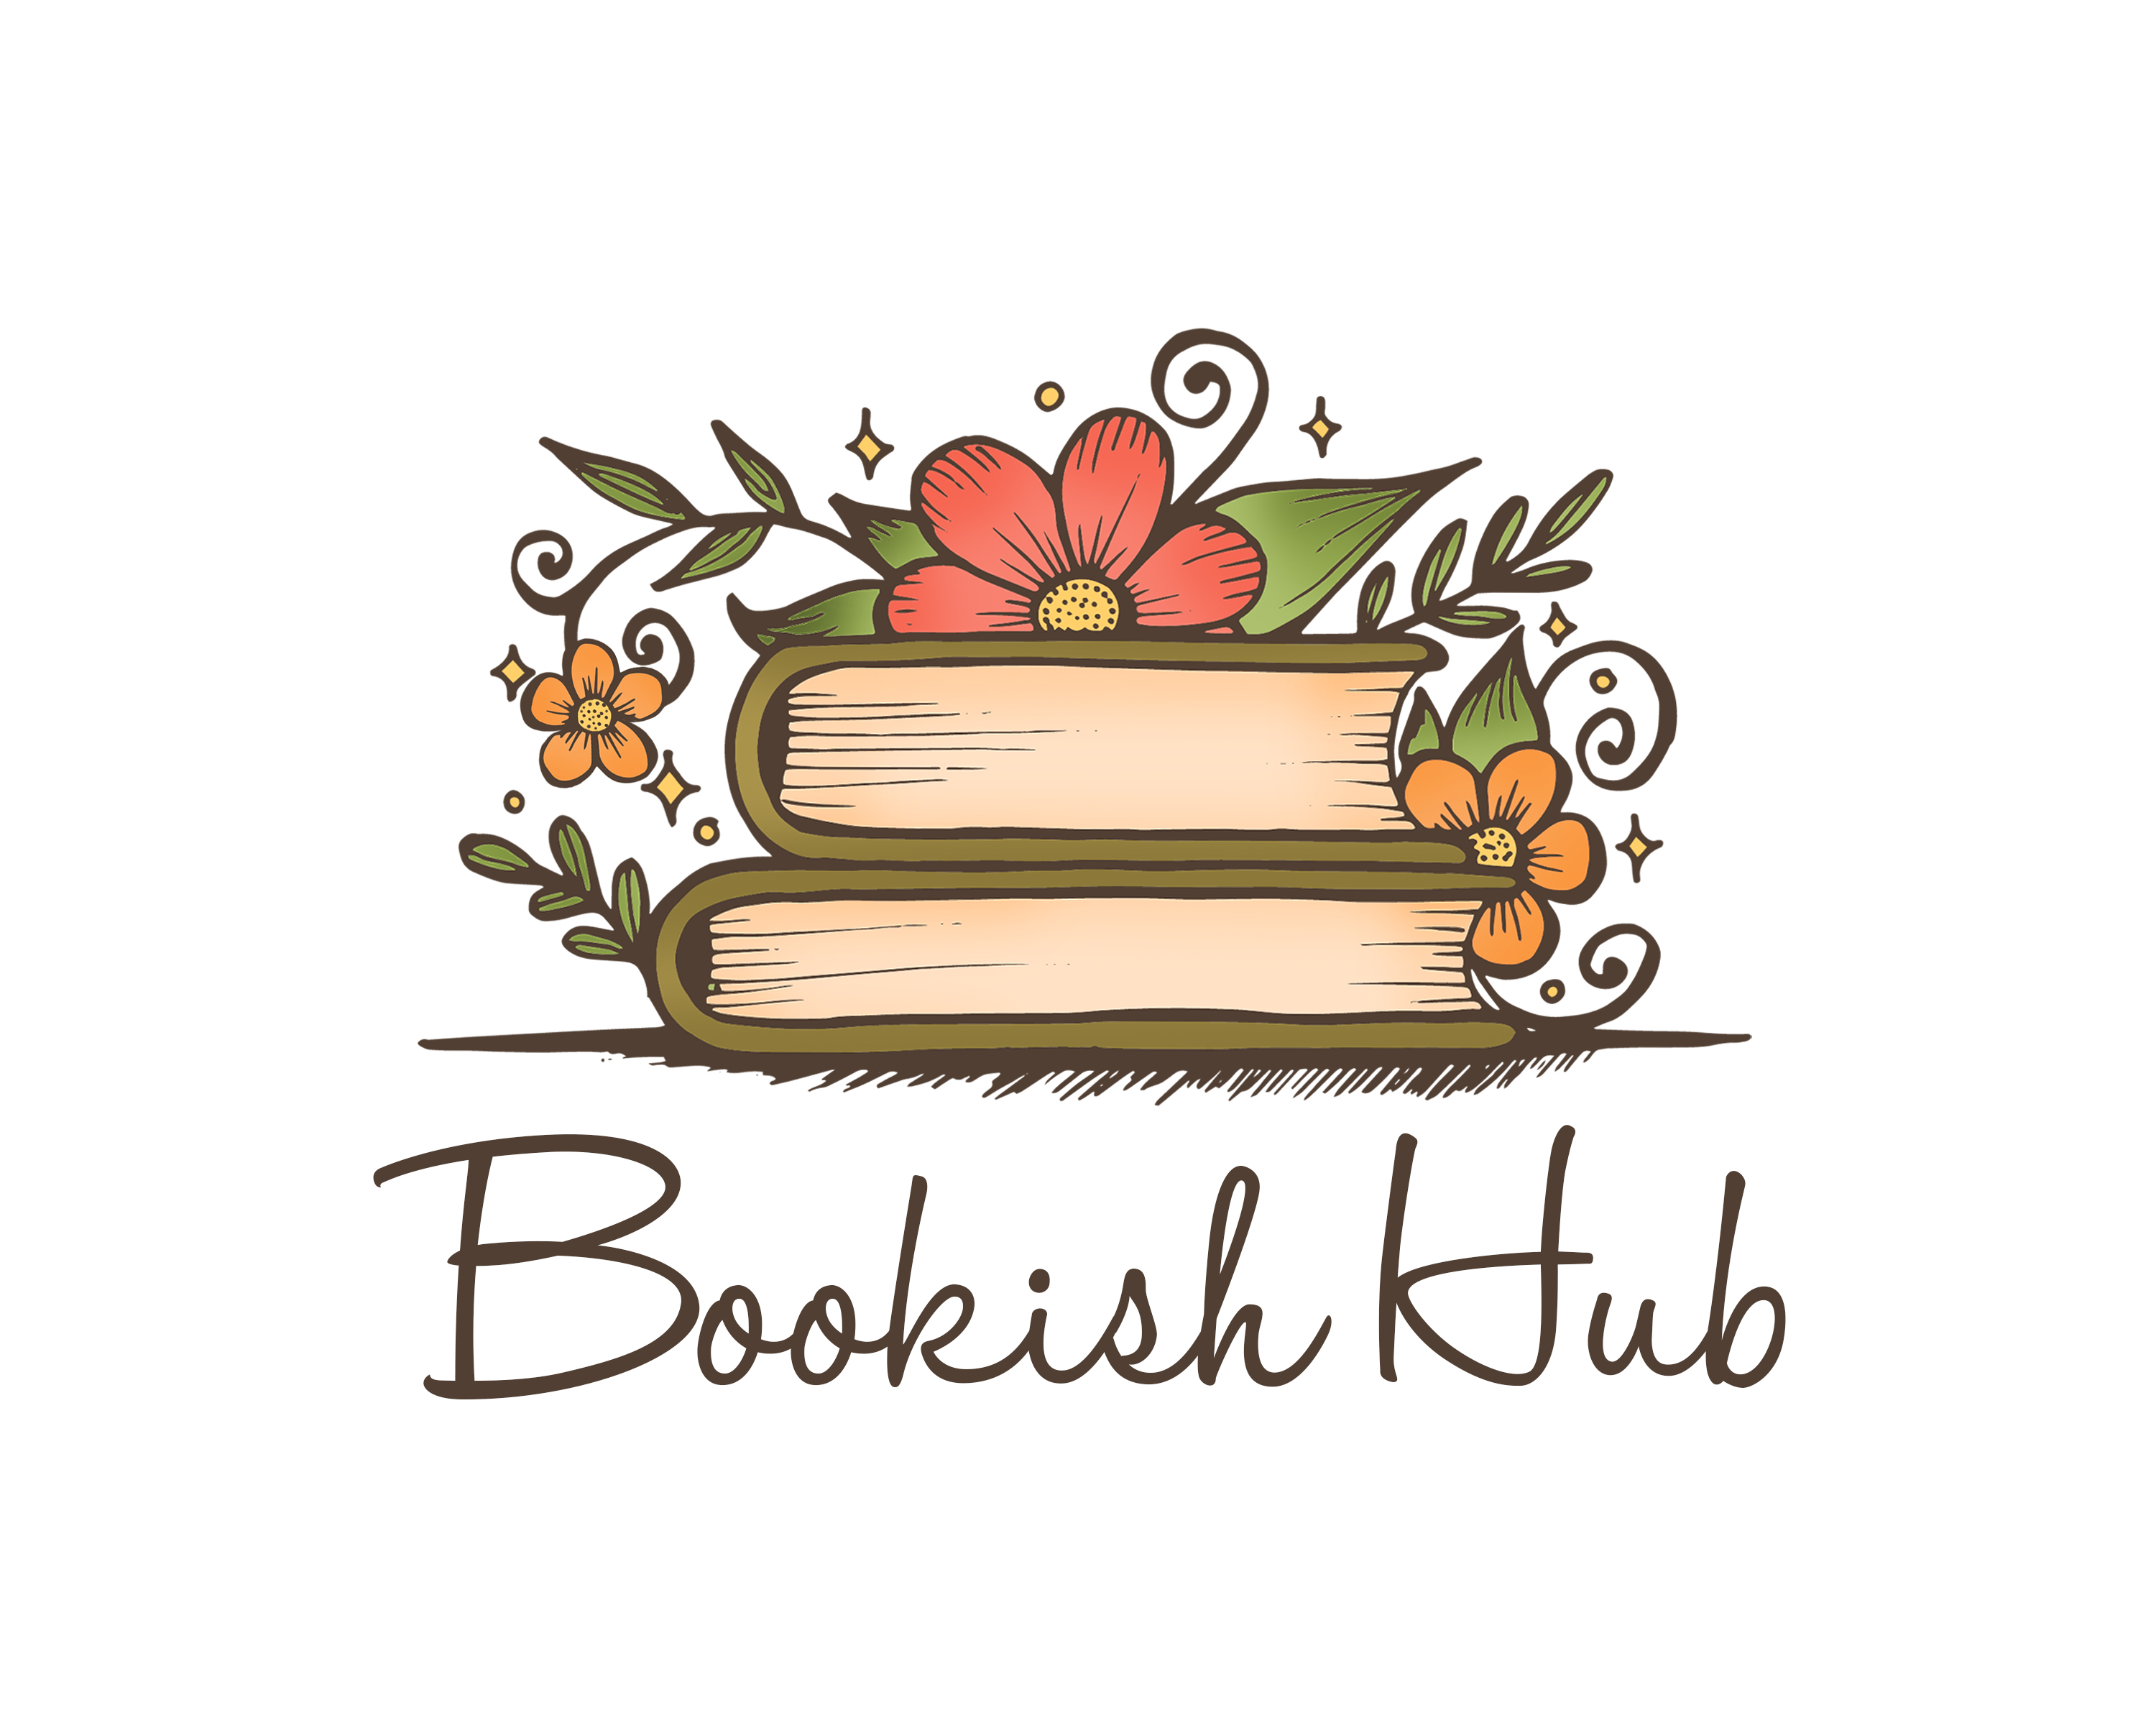 Bookish Hub.jpg